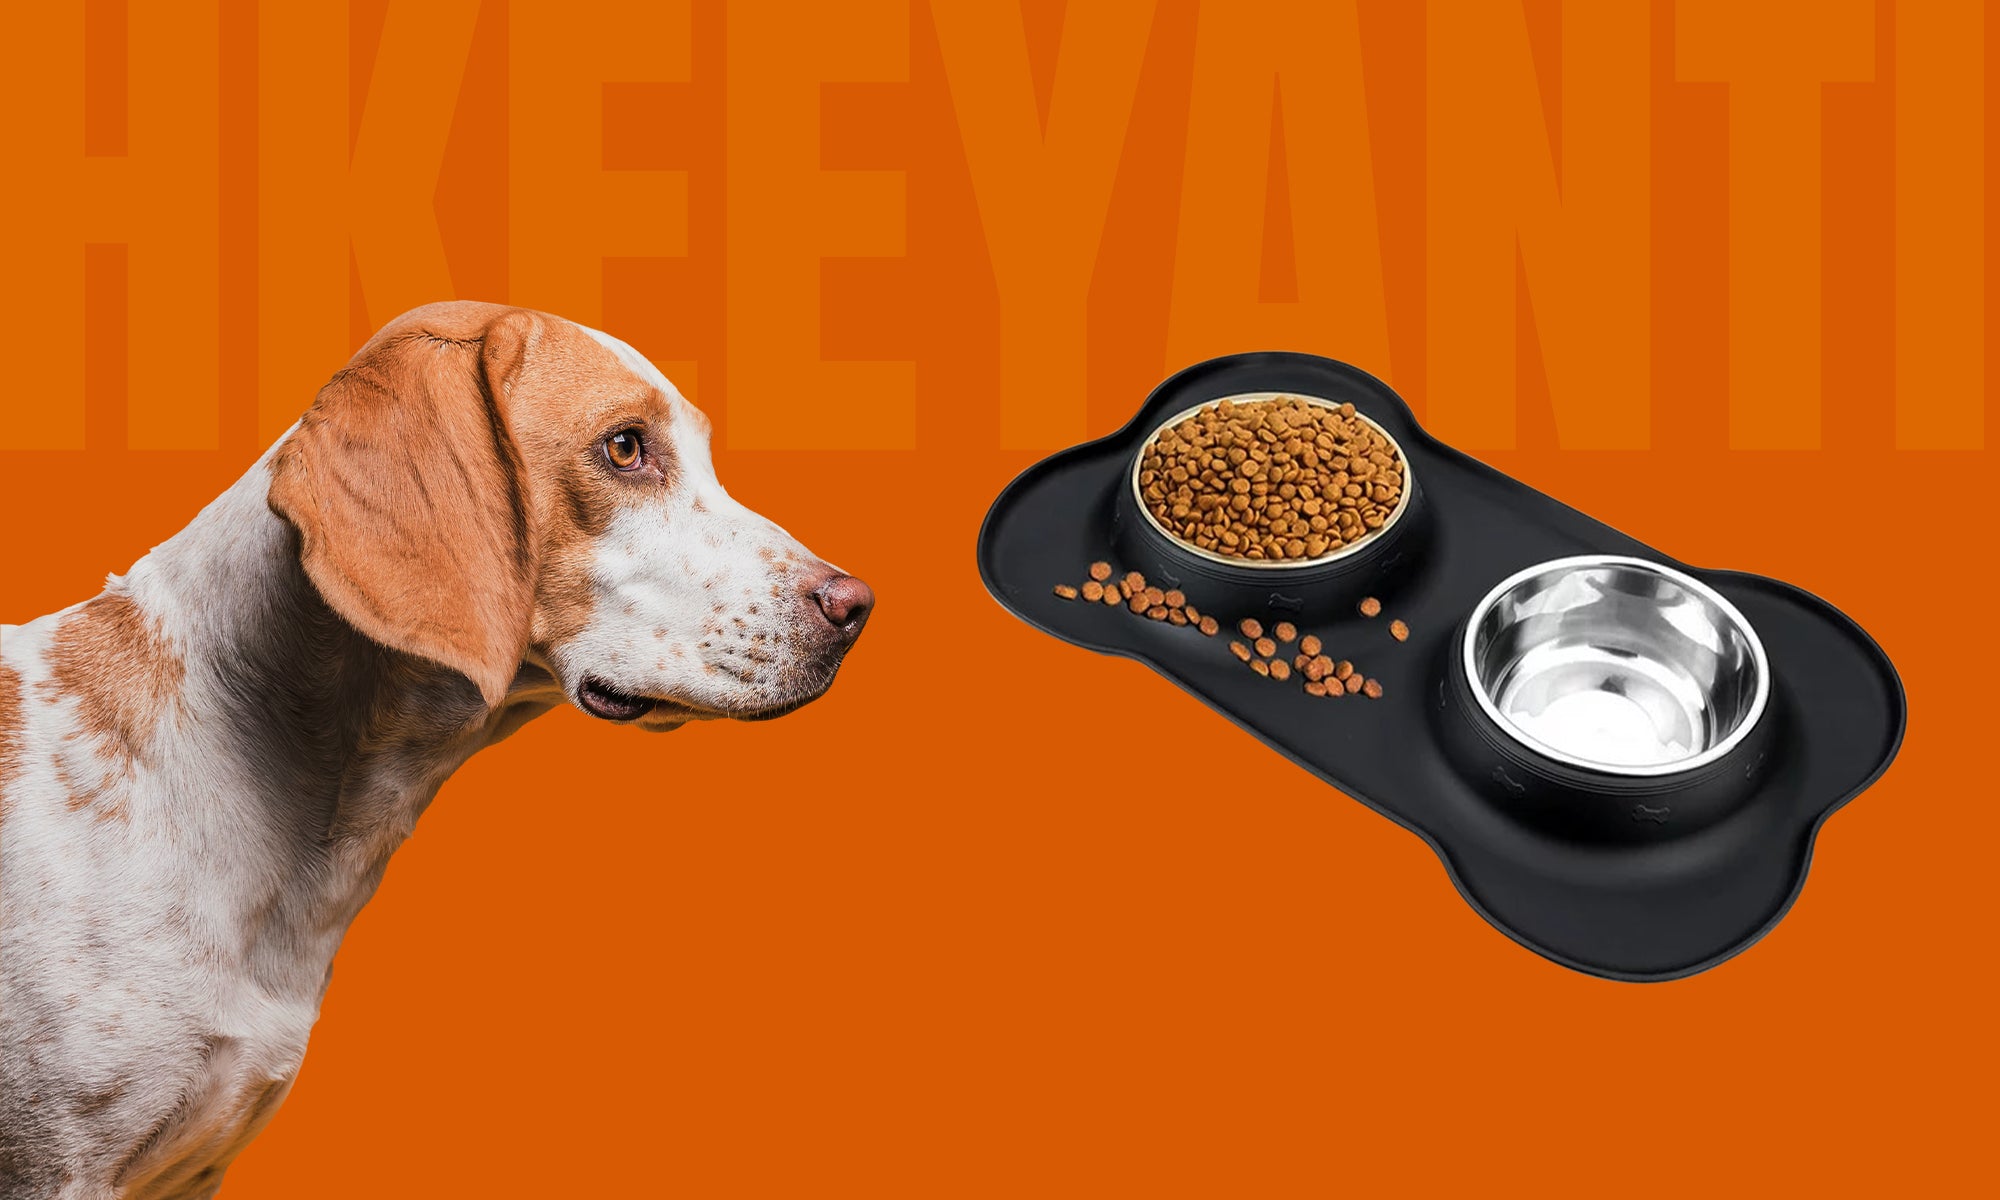 HKEEY Pet Dog and Cat Food Bowl Set